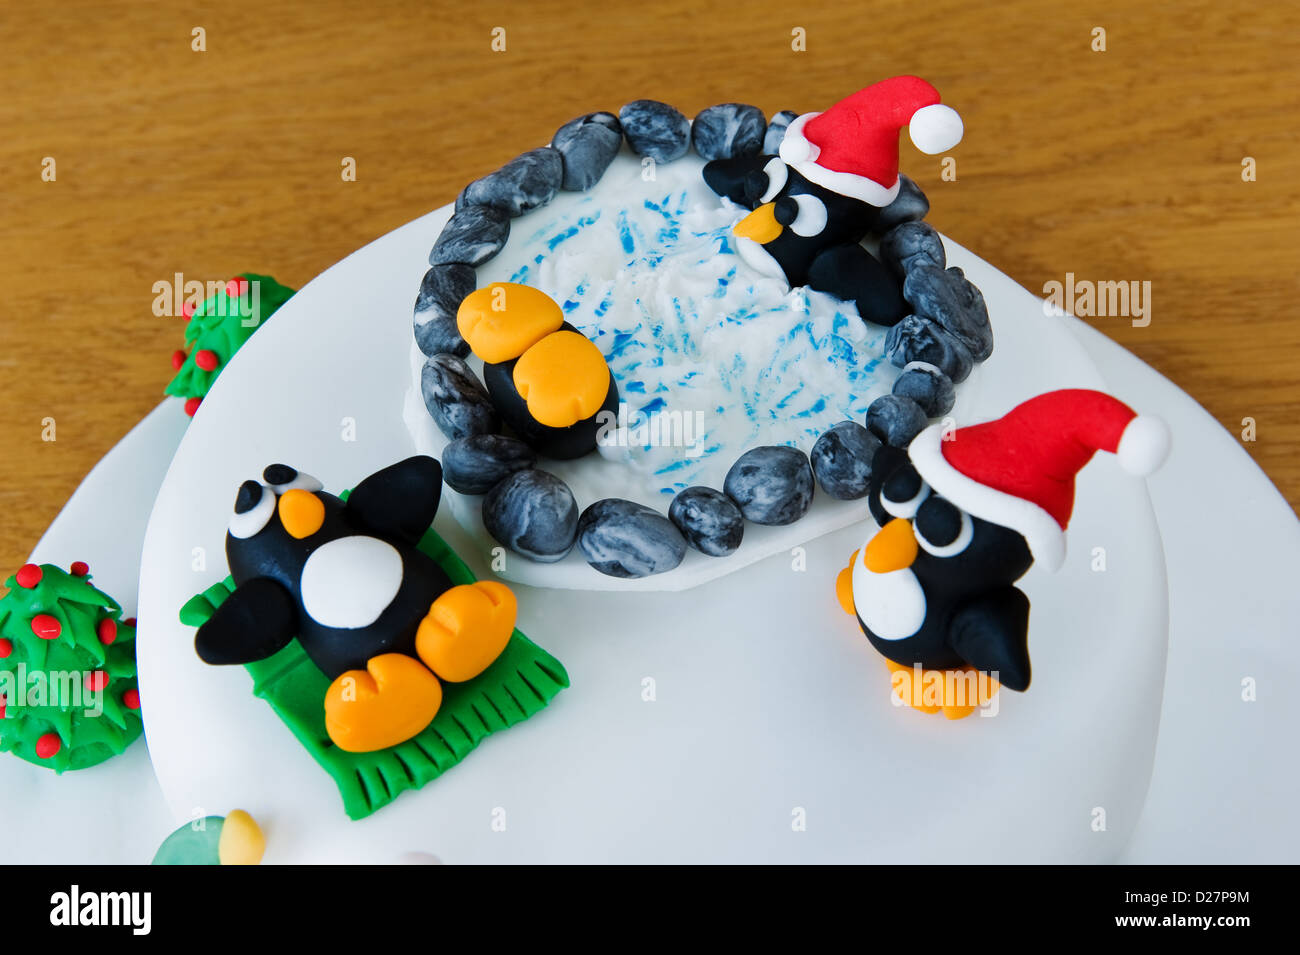 Novità la torta di Natale, decorata con divertenti pinguini e pupazzi di neve. Foto Stock